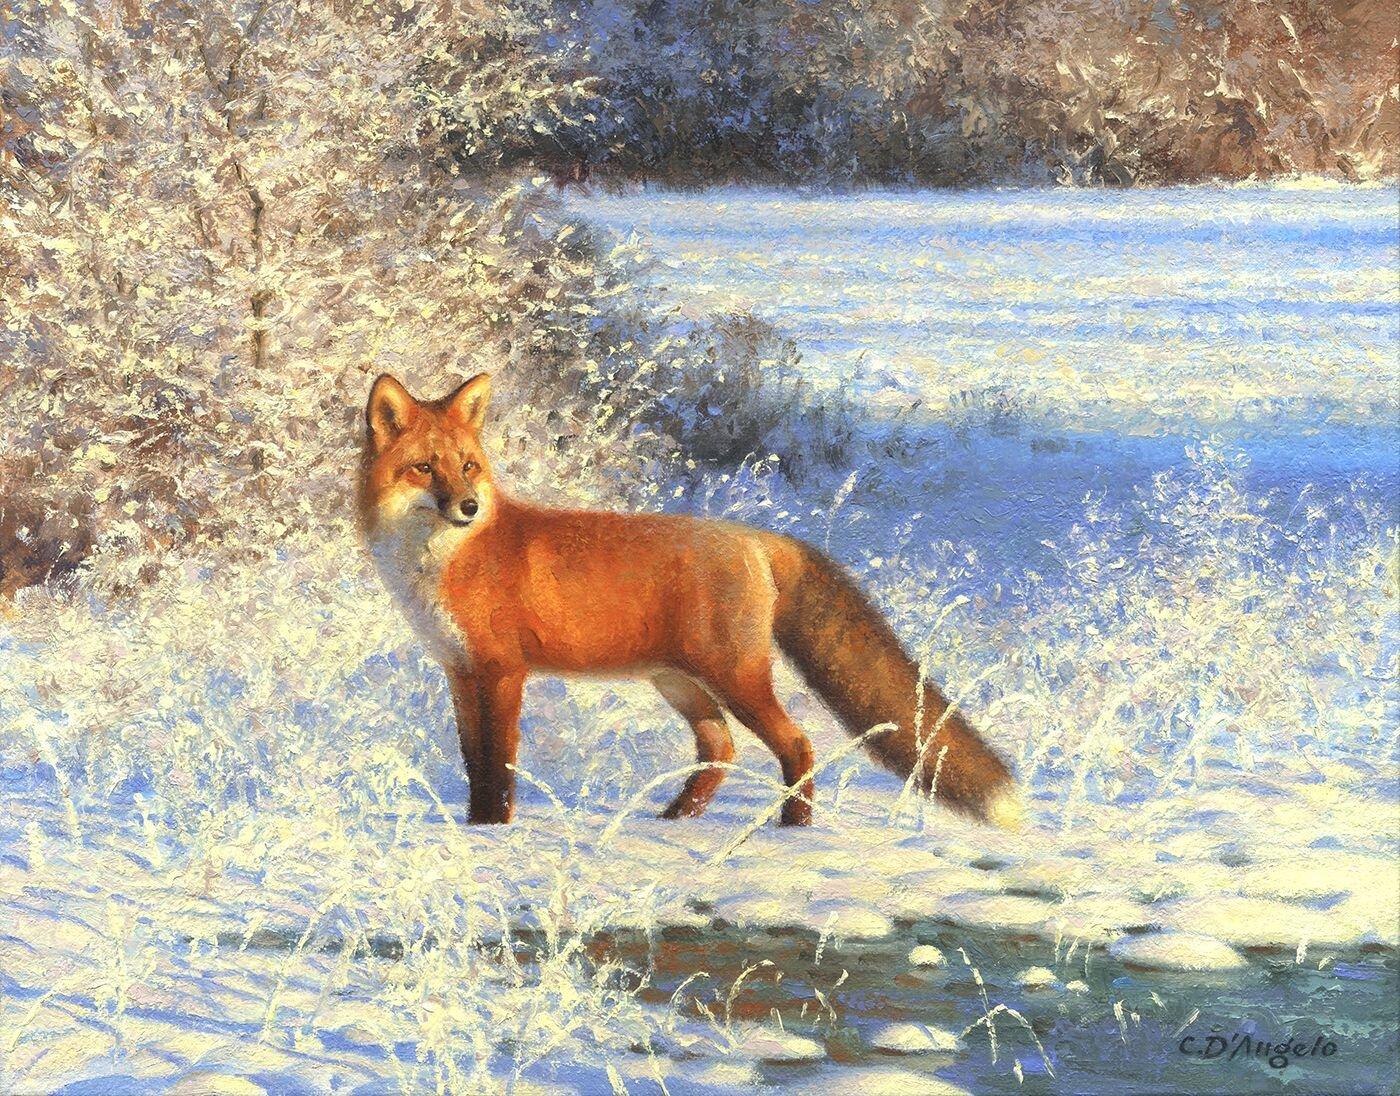 Cette œuvre, "Renard dans la neige fraîche", est un paysage d'hiver 11x14 peint à l'huile sur toile par l'artiste Claudio D'Angelo. Un renard roux vif se tient alerte dans la neige fraîchement tombée.  La lumière chaude danse sur la neige et les